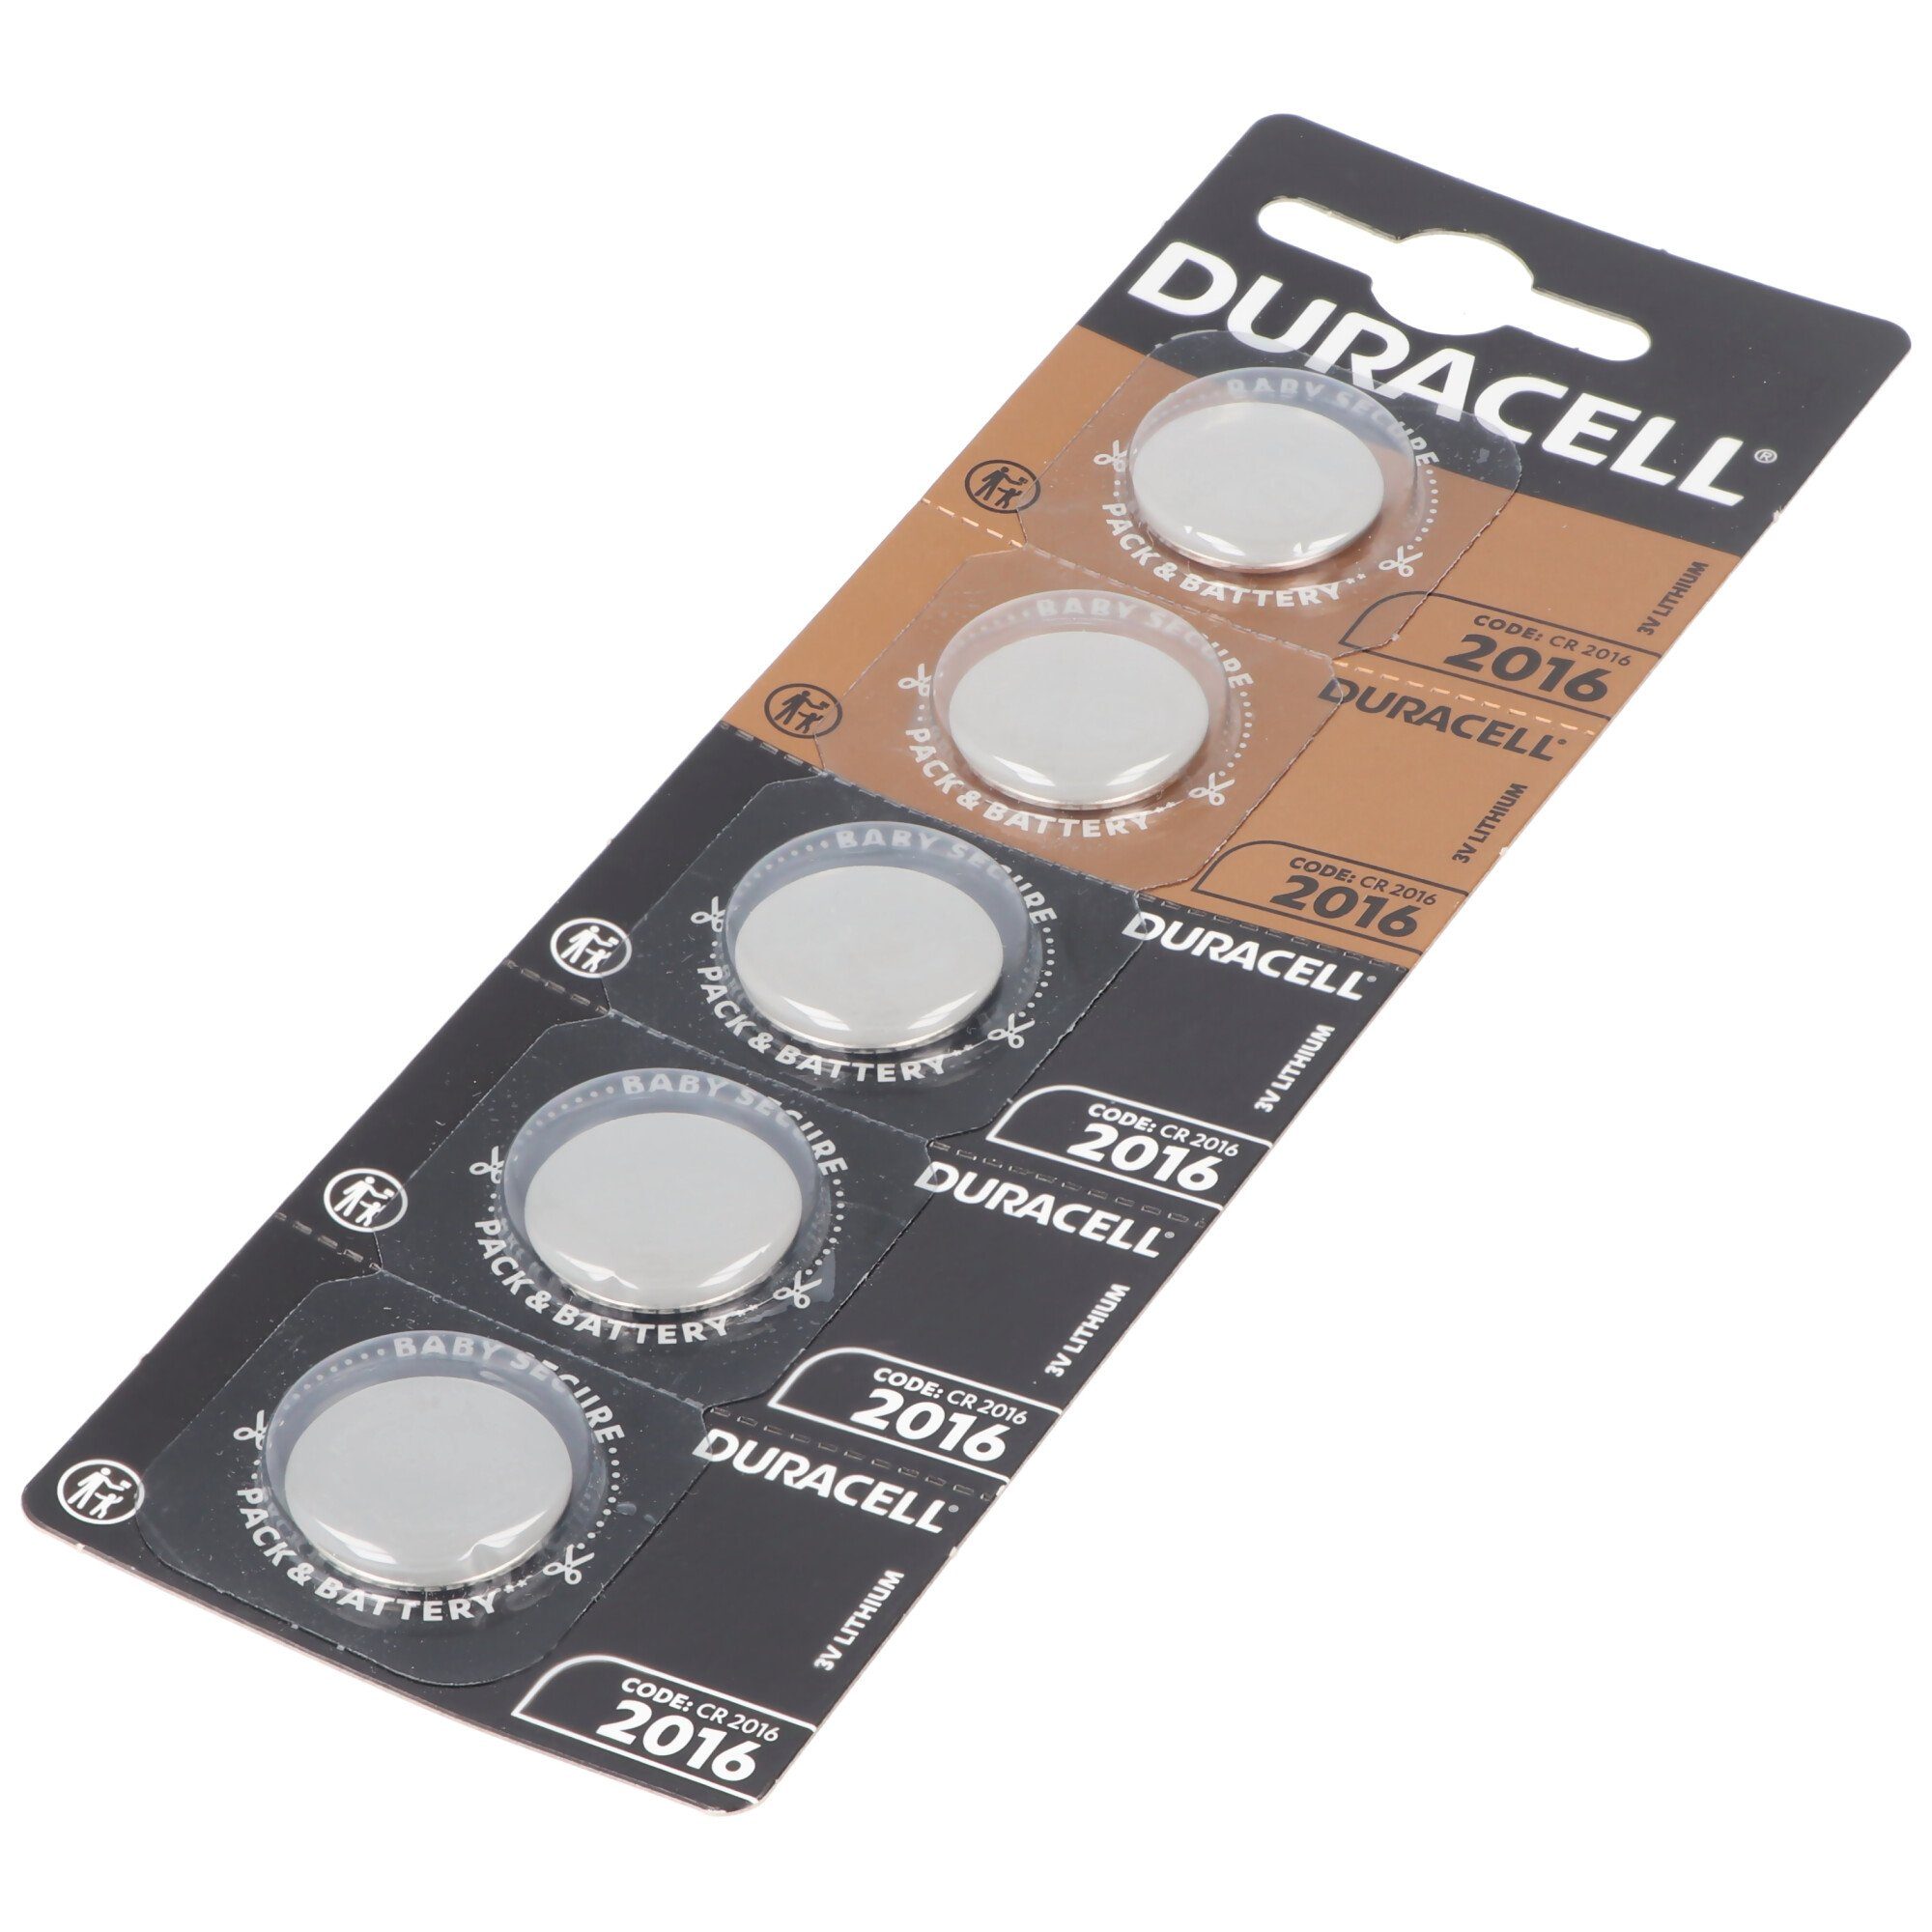 Batterie Batterie Duracell CR2016 Duracell 5x Lithium